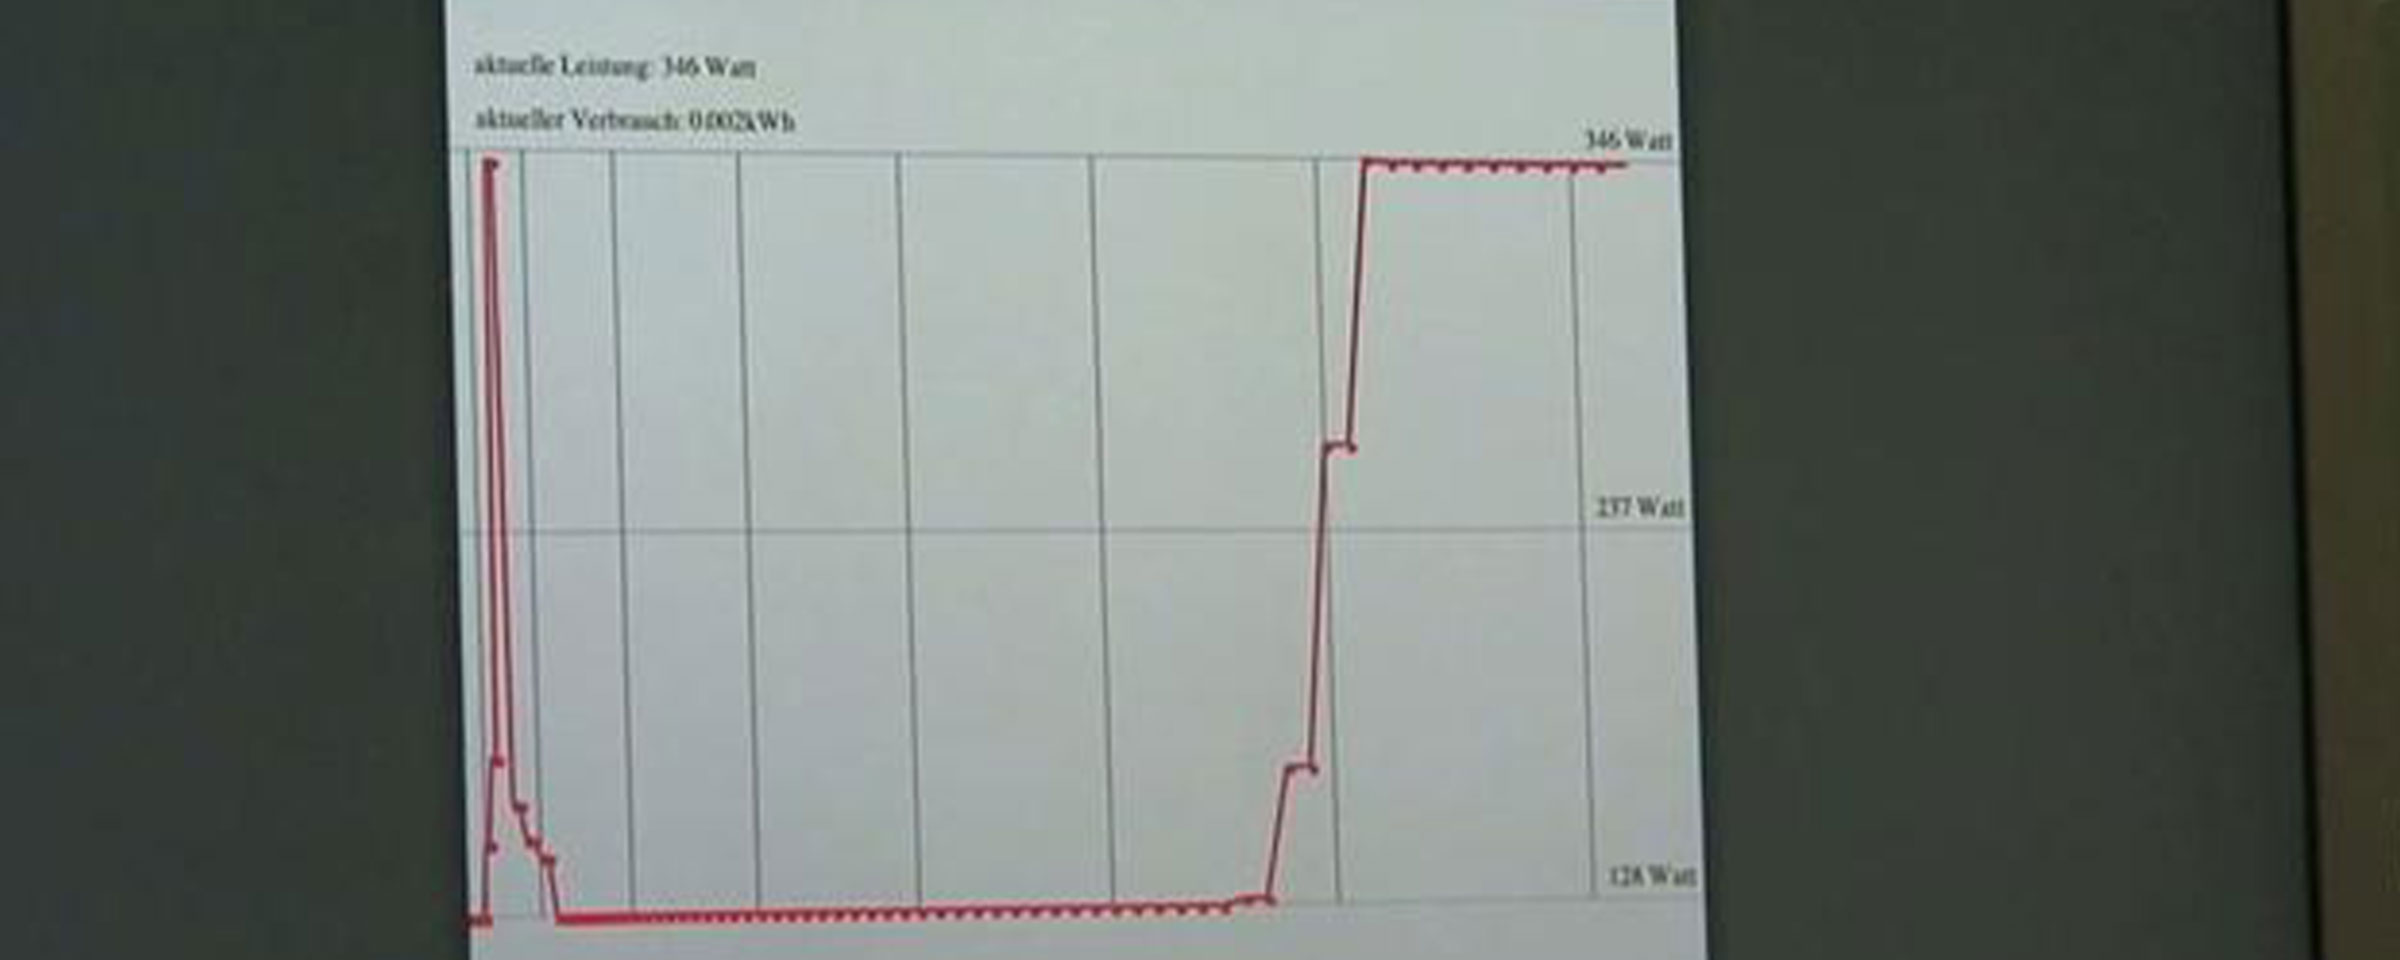 Liniendiagramm zeigt die aktuelle Leistung in Watt und Verbrauch an